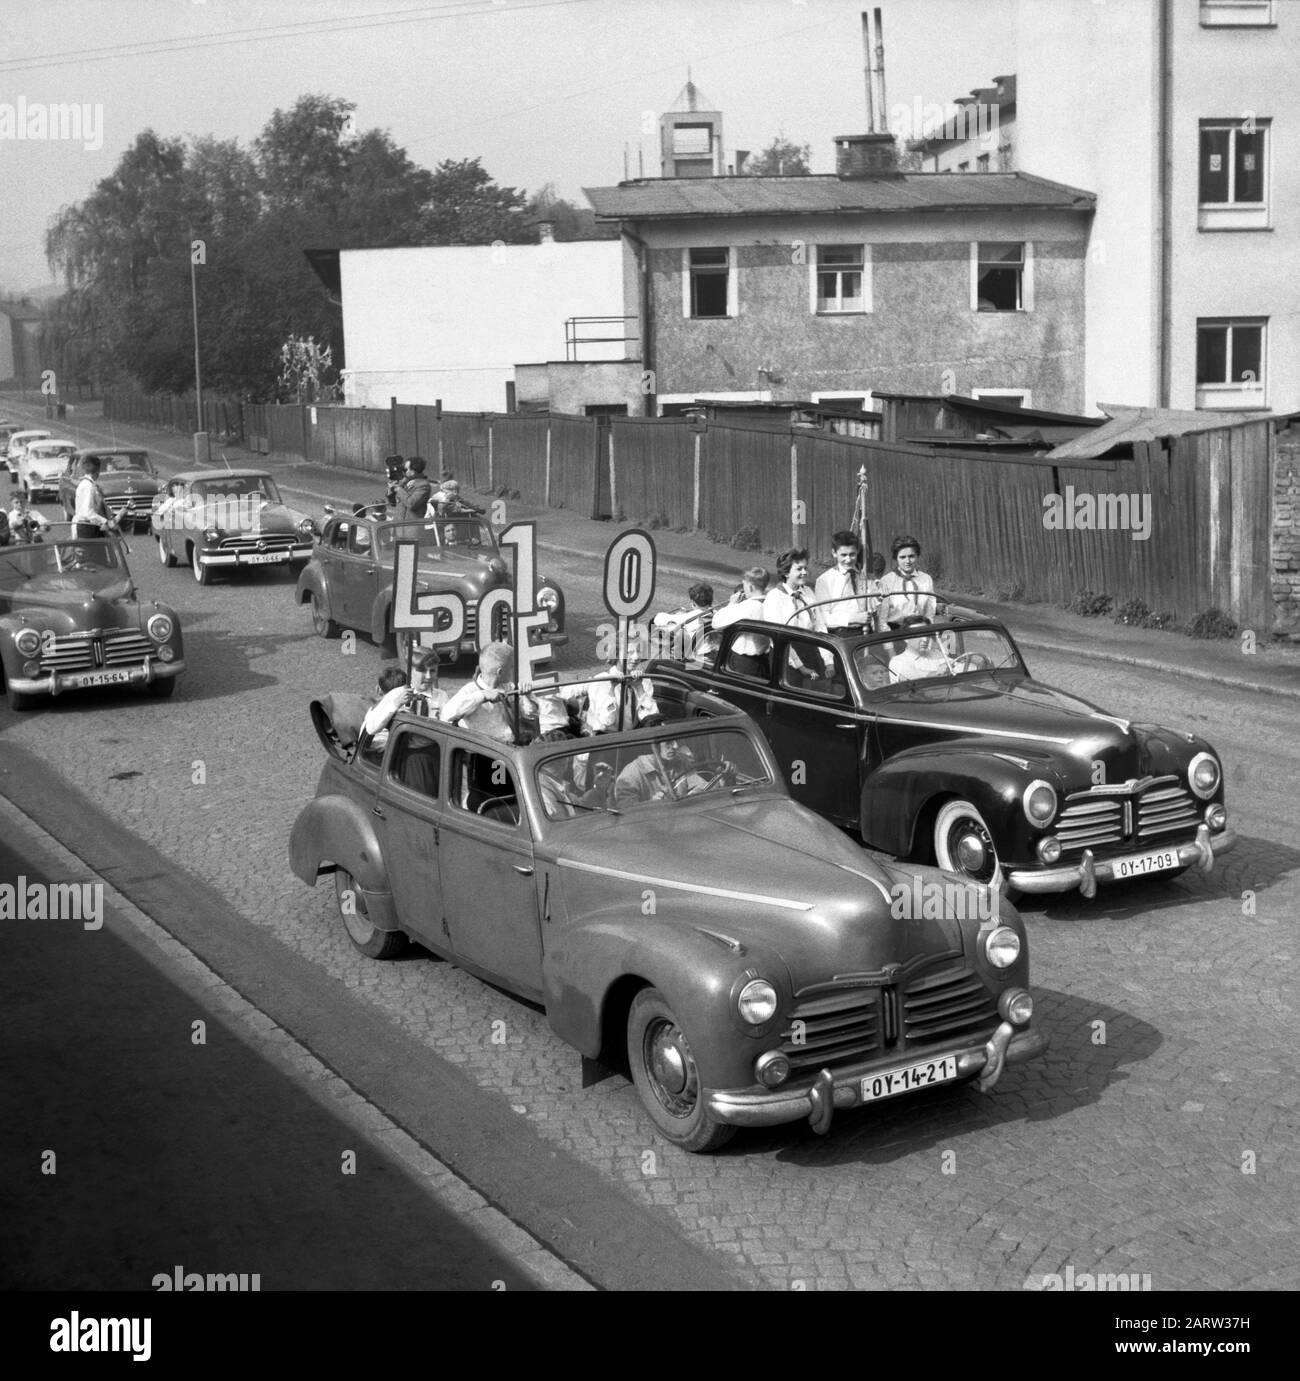 Pionierkongress in Nachod, Tschechien (ehemalige Tschechoslowakei), Mai 1959. Historische Autoparade mit Mädchen und Jungen in Uniformen auf der Straße der Stadt. Stockfoto